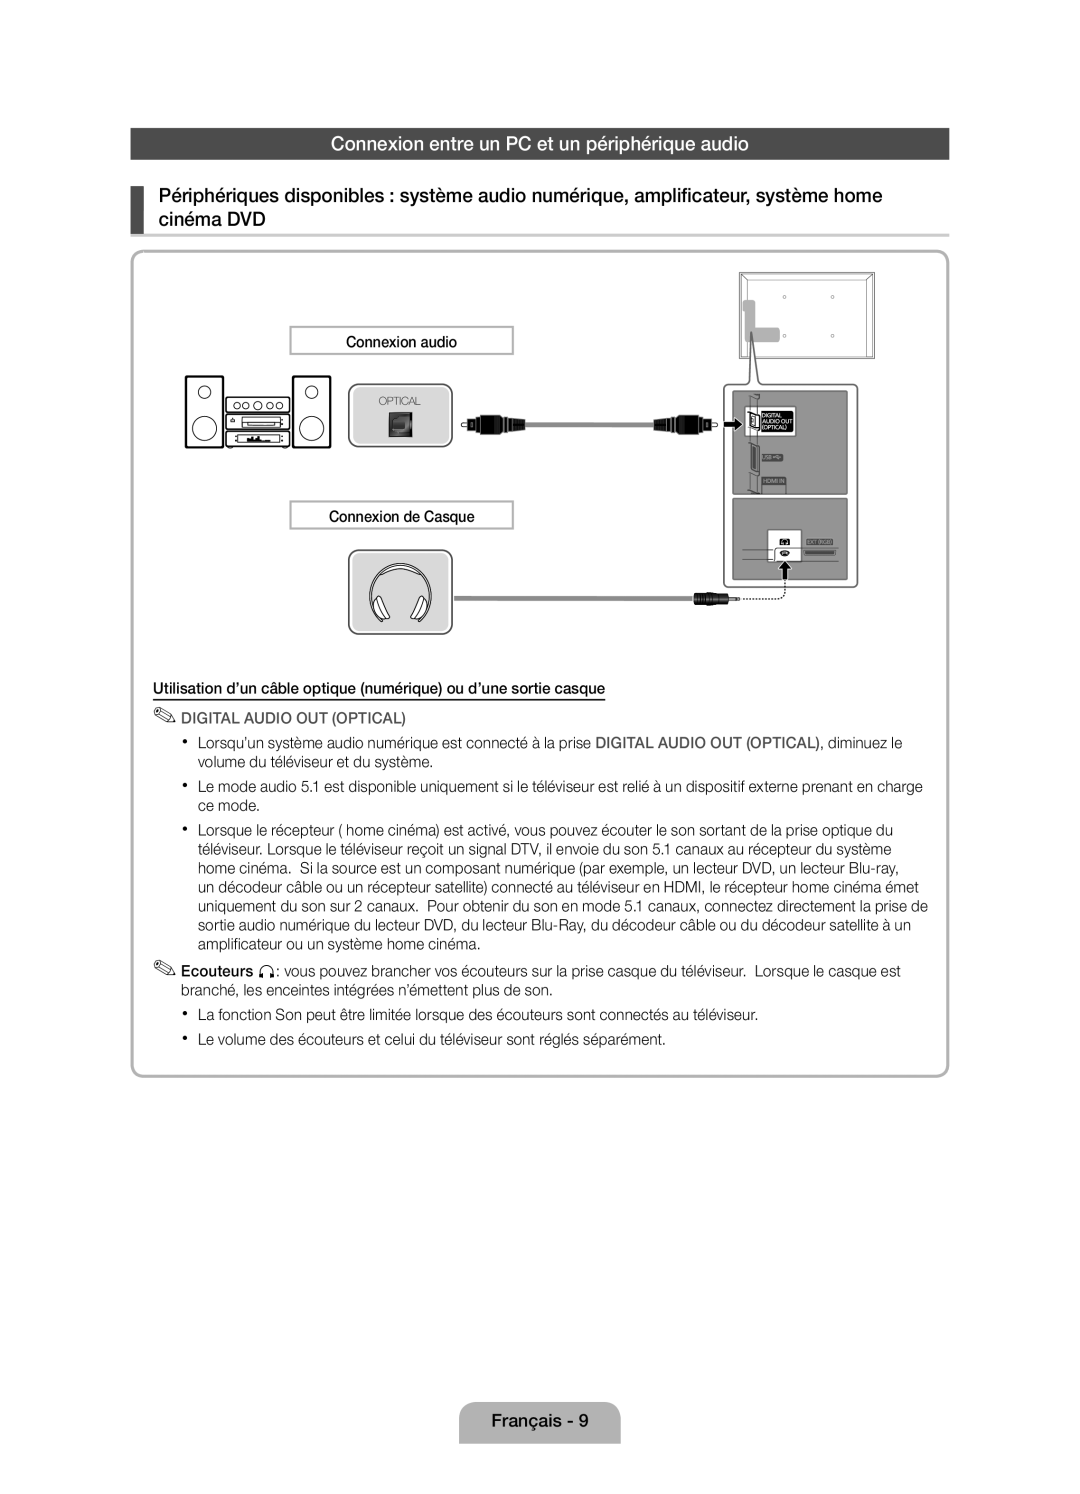 Samsung UE32D4000NWXZG, UE32D4010NWXZG manual Connexion entre un PC et un périphérique audio, Digital Audio Out Optical 